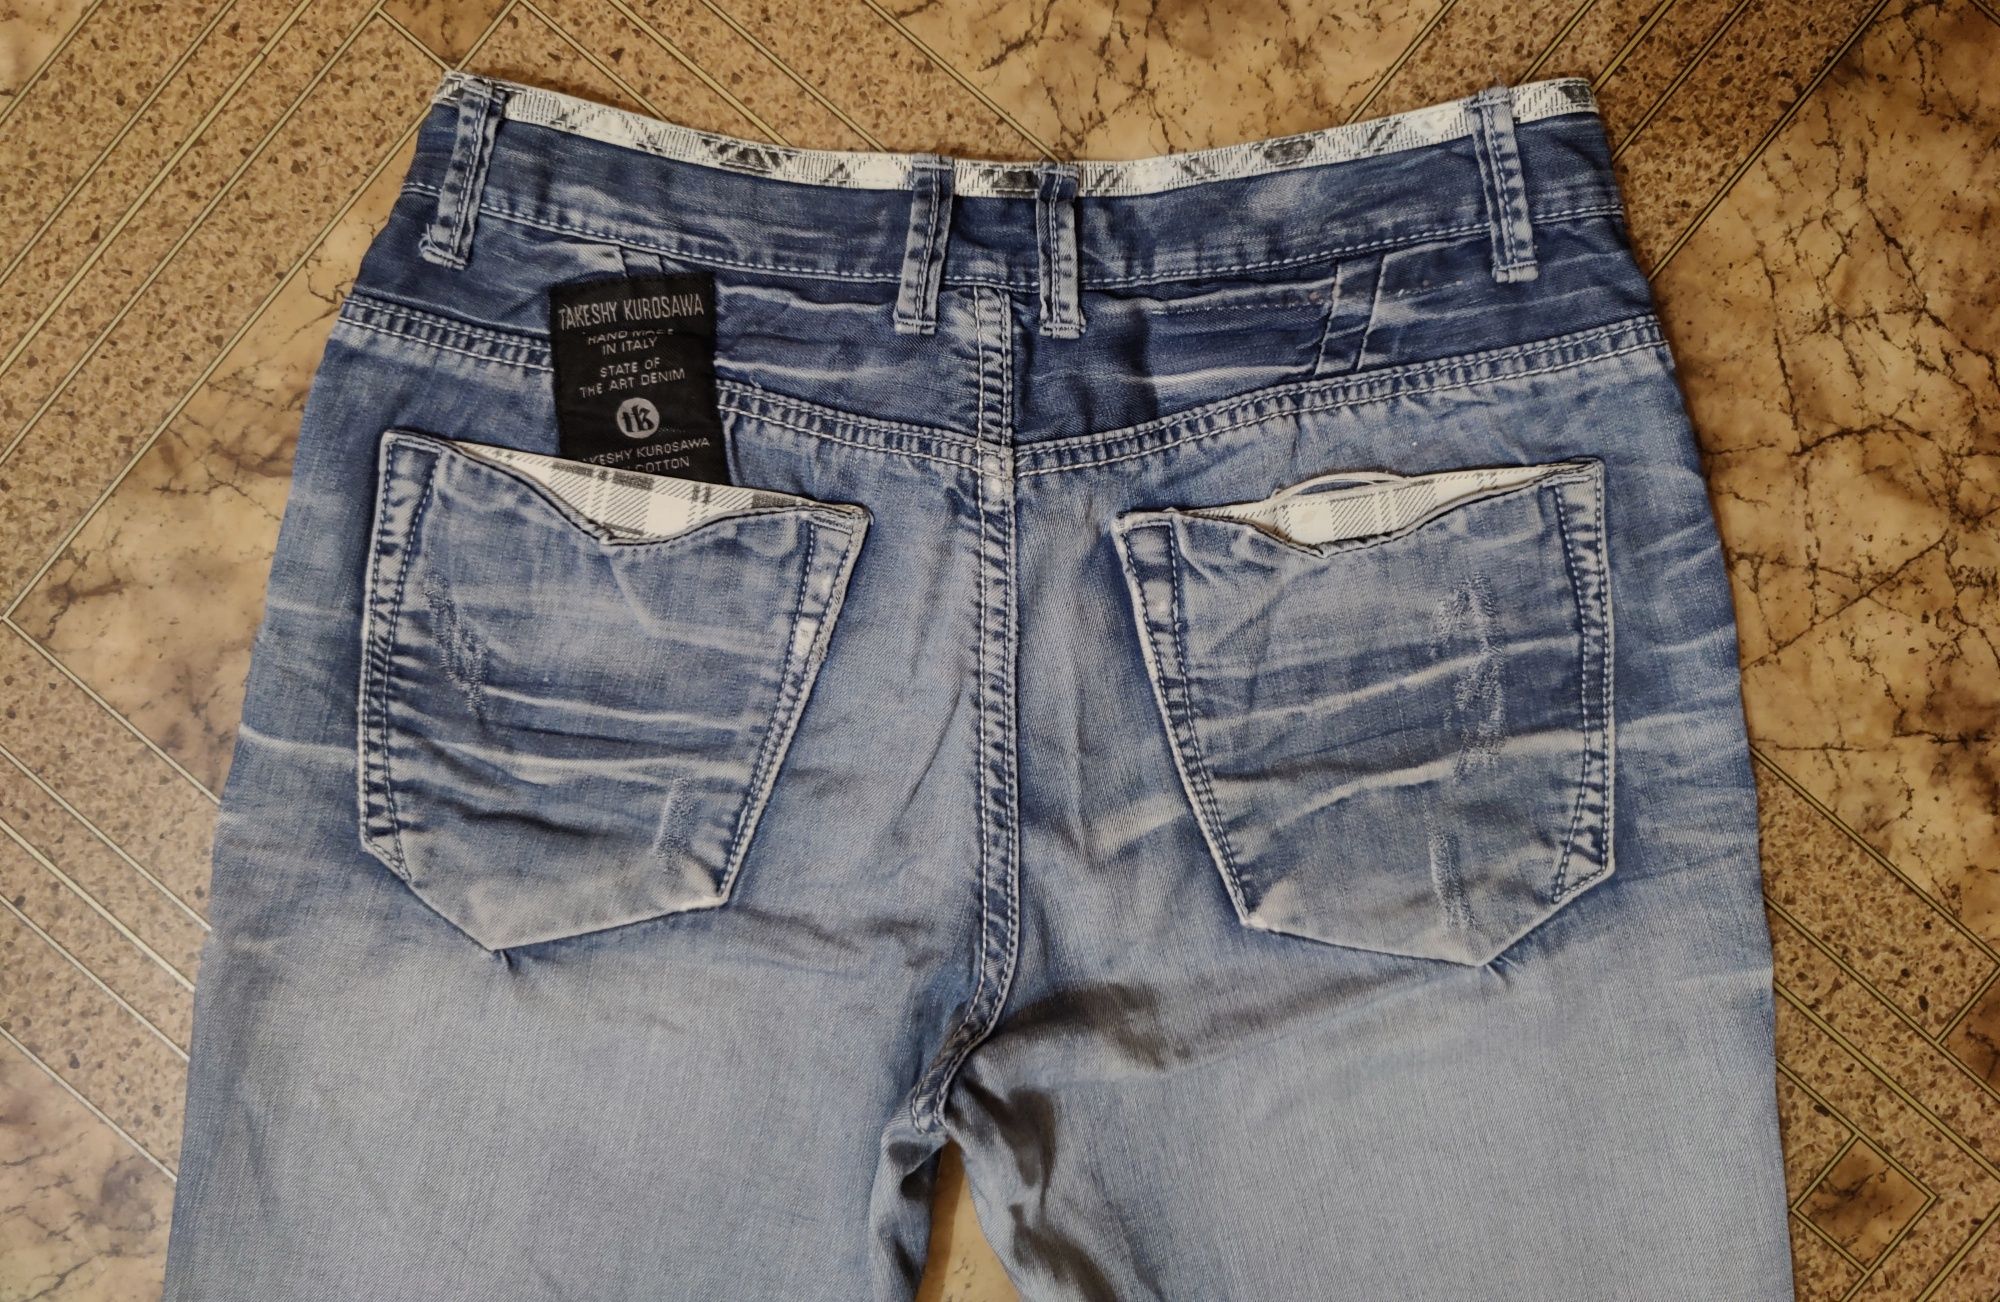 Летние джинсовые шорты